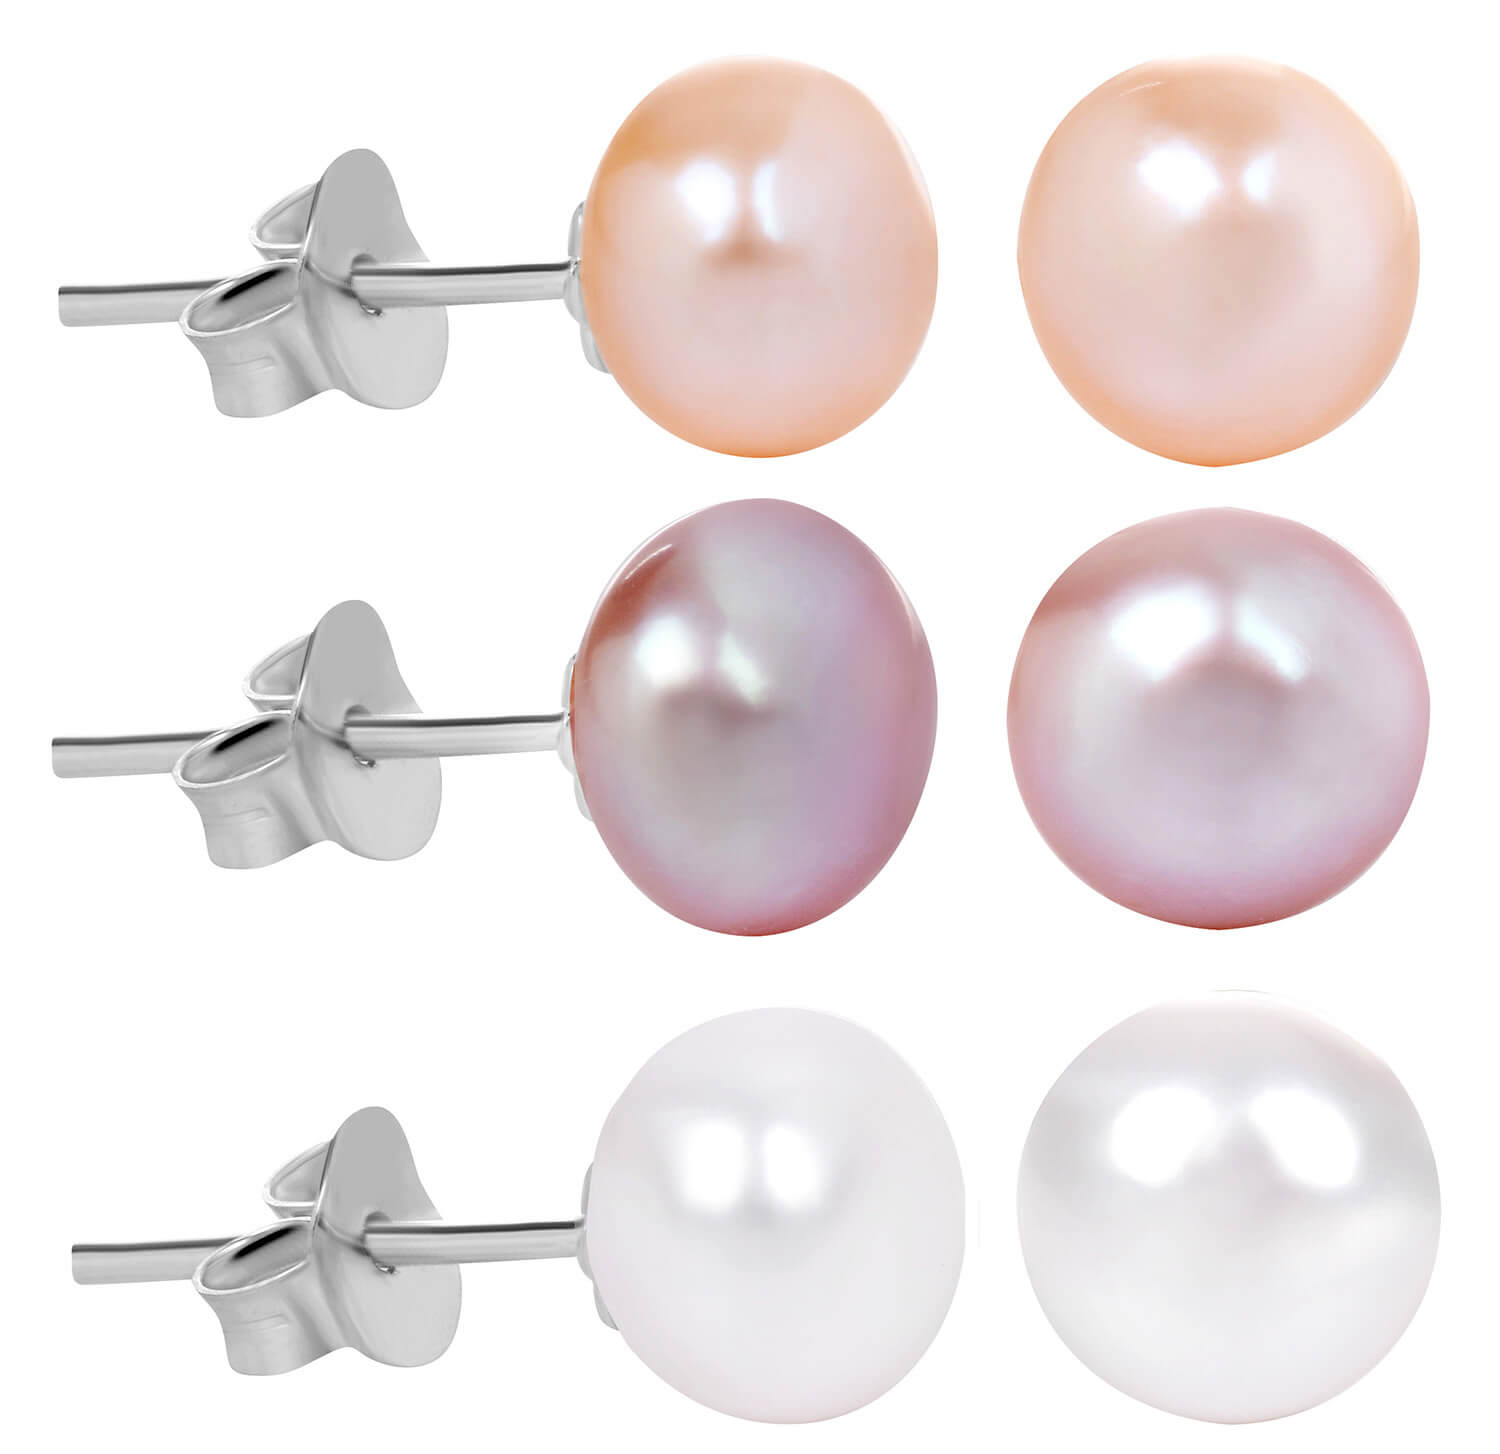 JwL Luxury Pearls Zvýhodněná sada 3 párů perlových náušnic - bílé, lososové, fialové JL0426